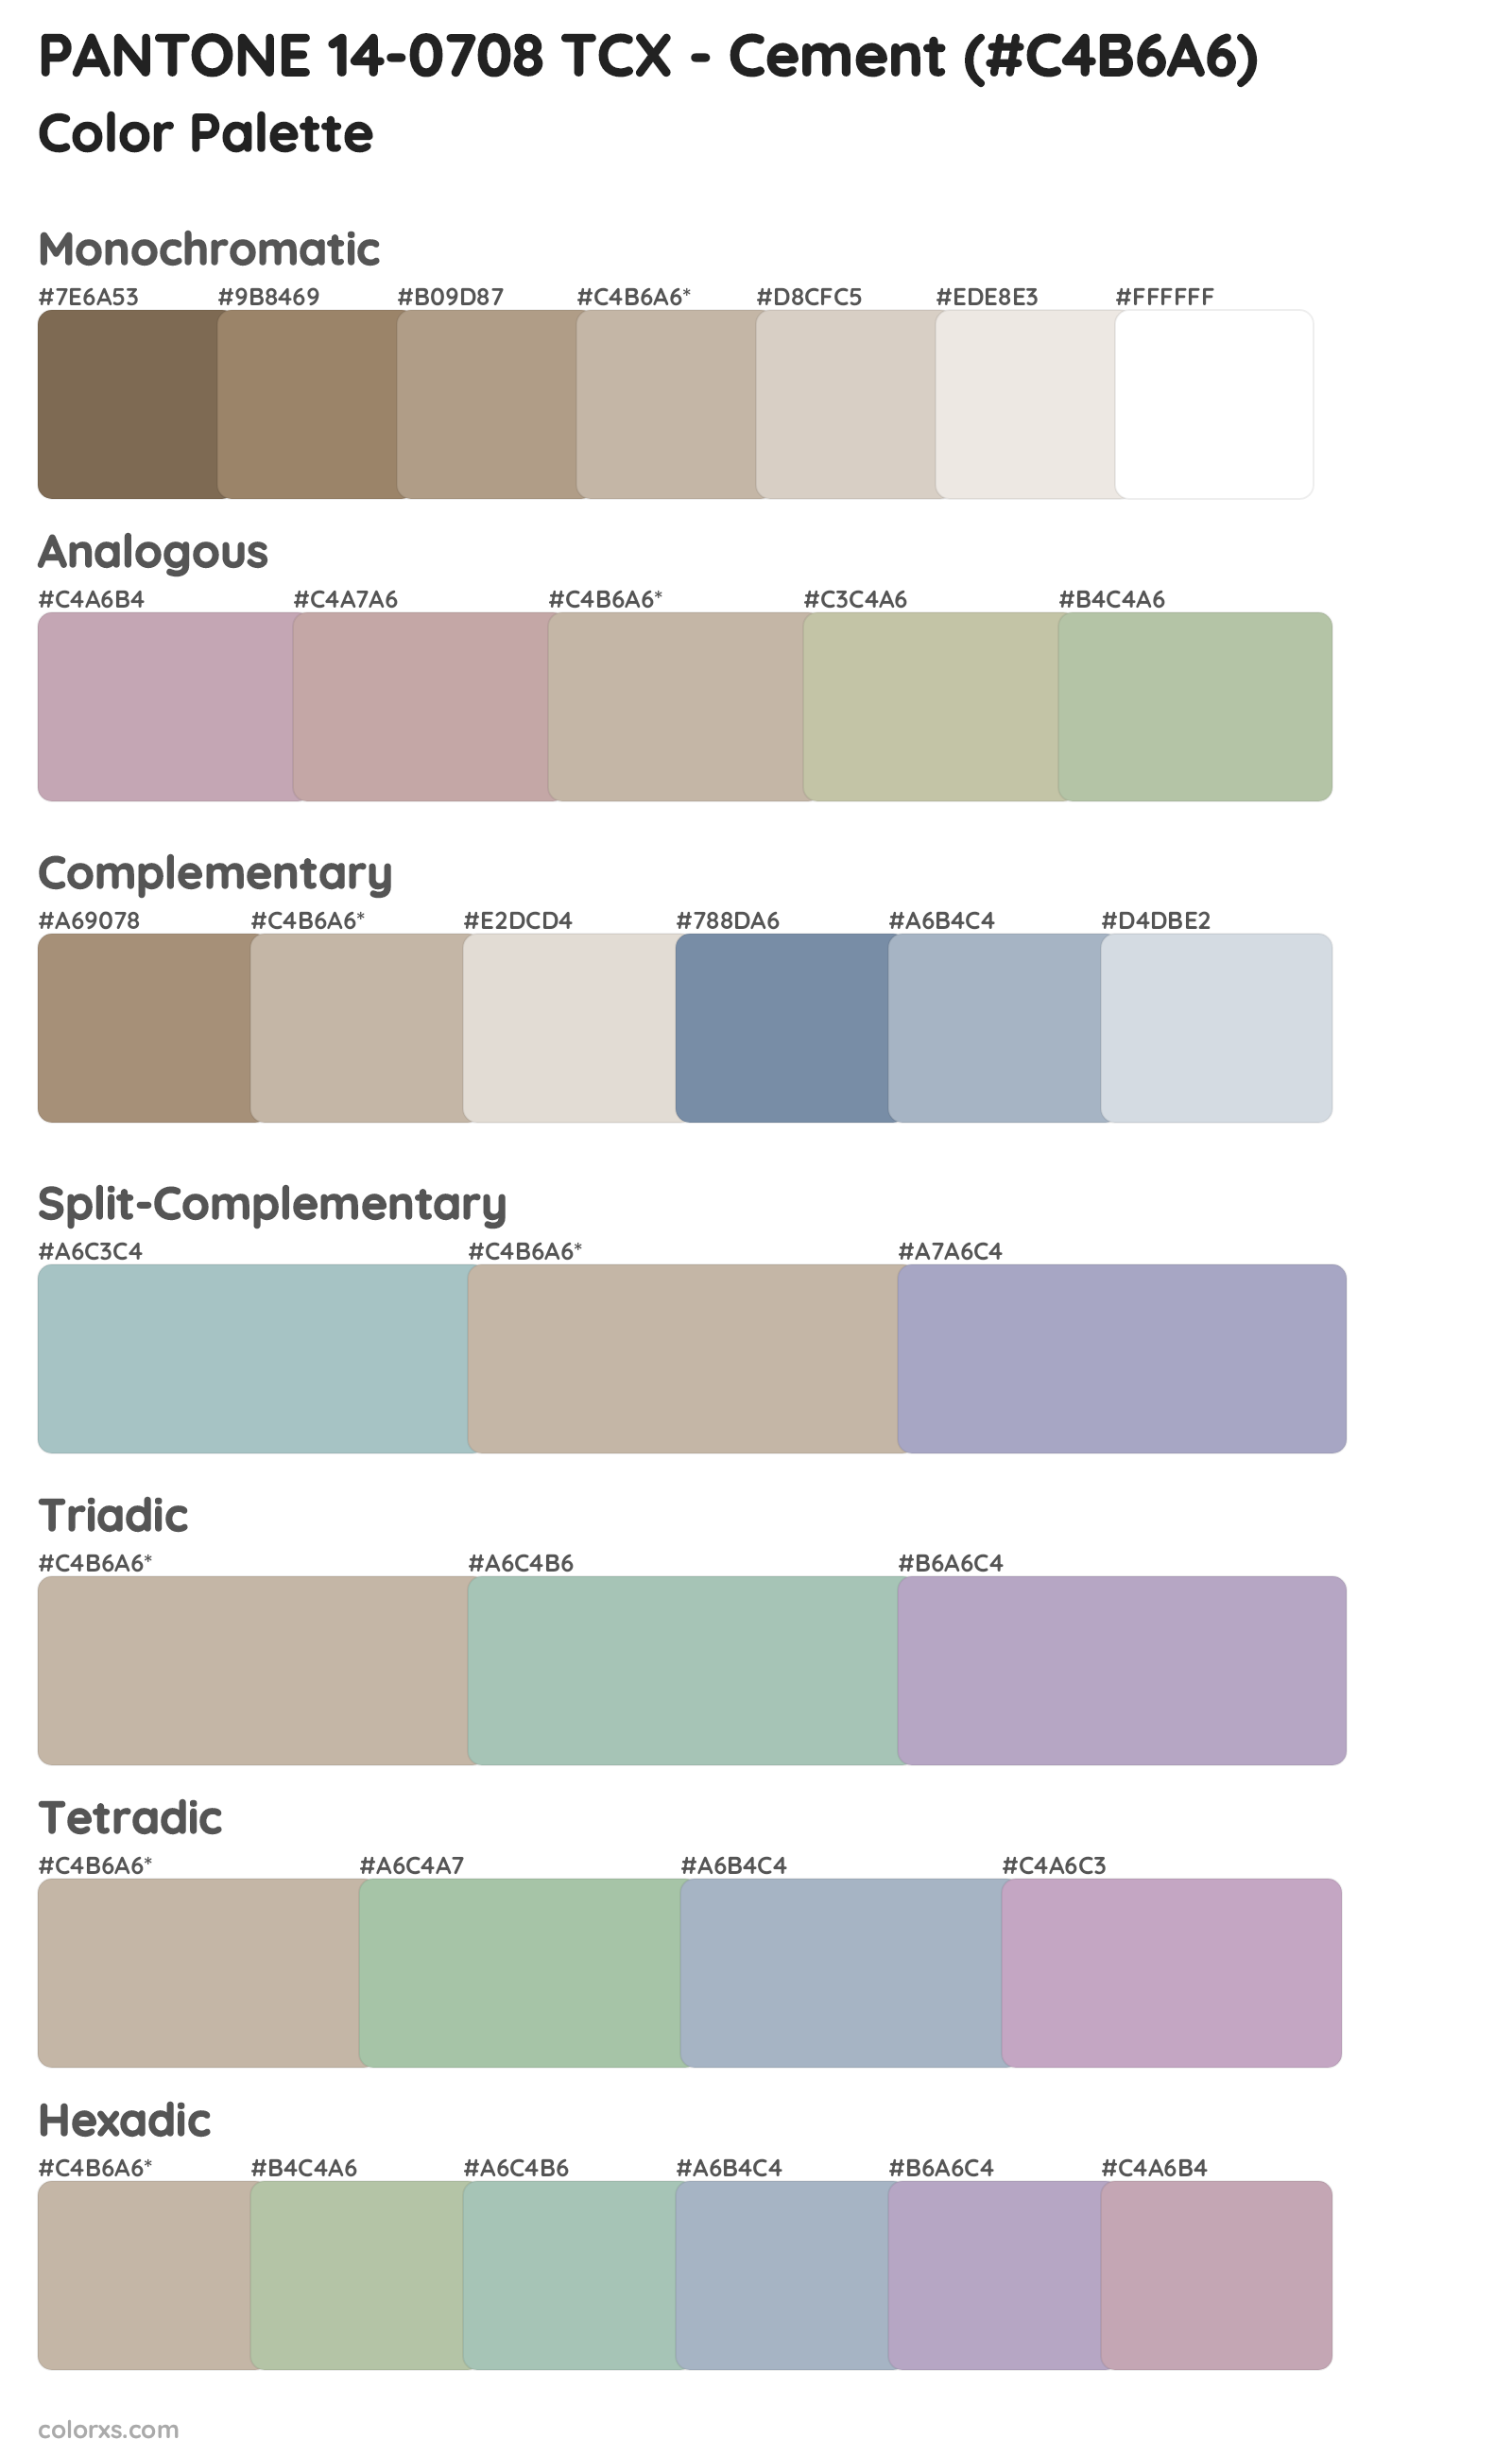 PANTONE 14-0708 TCX - Cement Color Scheme Palettes